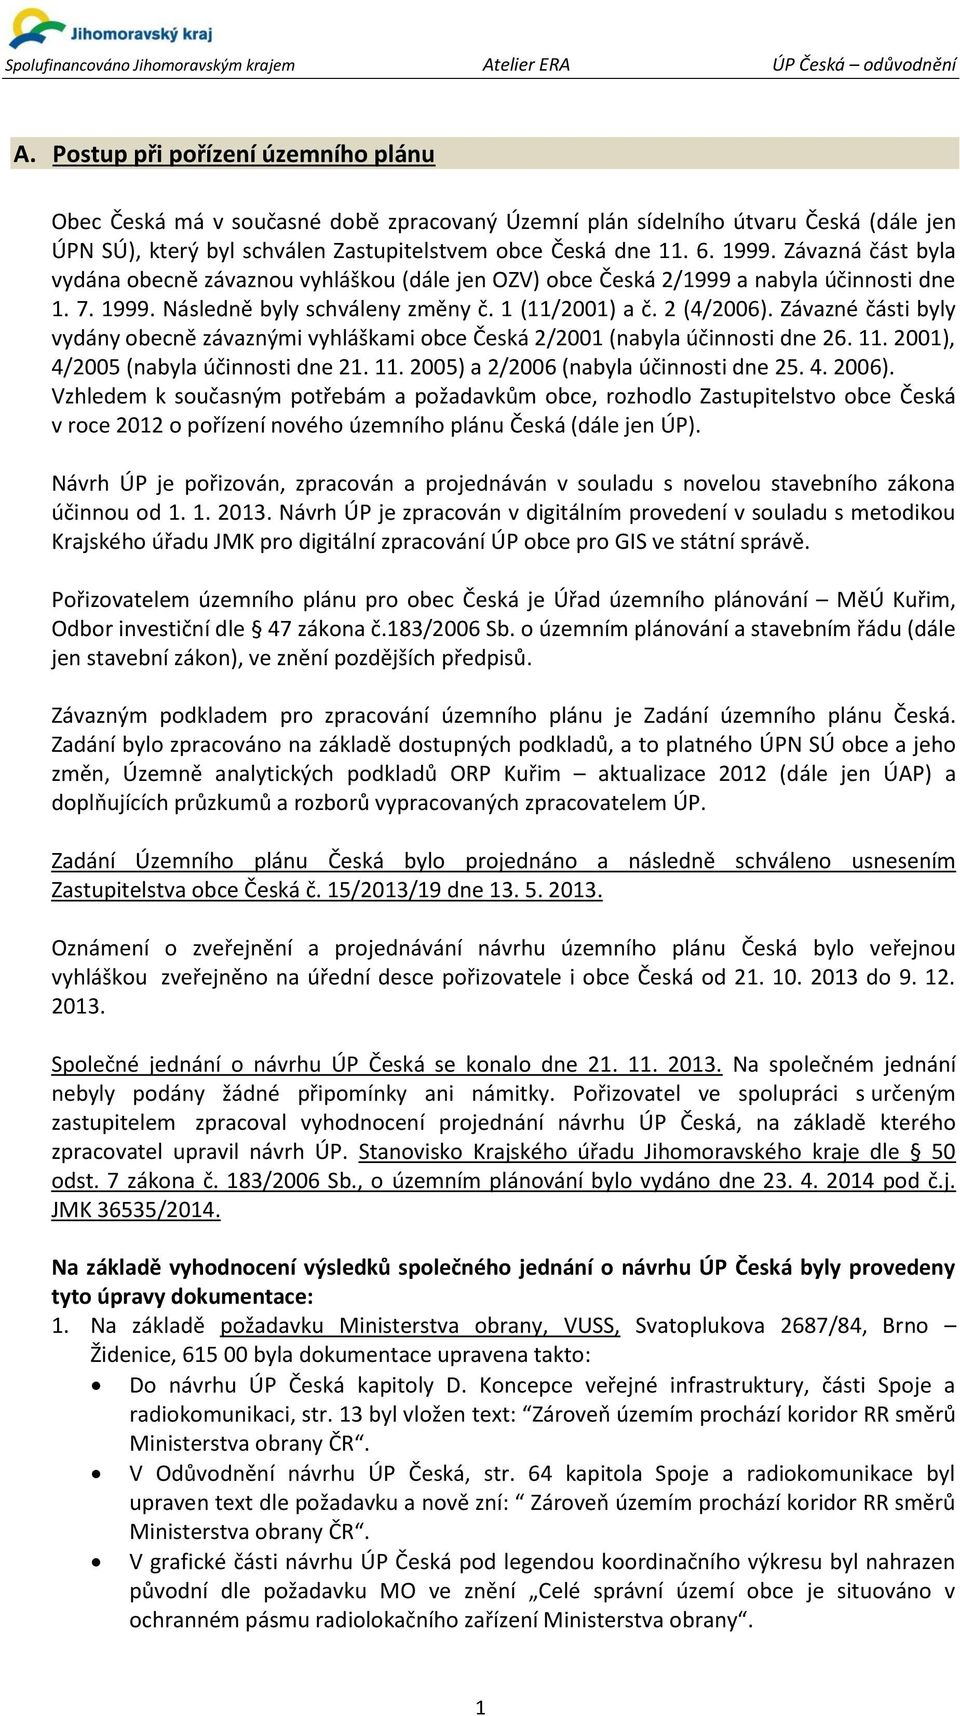 Závazné části byly vydány obecně závaznými vyhláškami obce Česká 2/2001 (nabyla účinnosti dne 26. 11. 2001), 4/2005 (nabyla účinnosti dne 21. 11. 2005) a 2/2006 (nabyla účinnosti dne 25. 4. 2006).